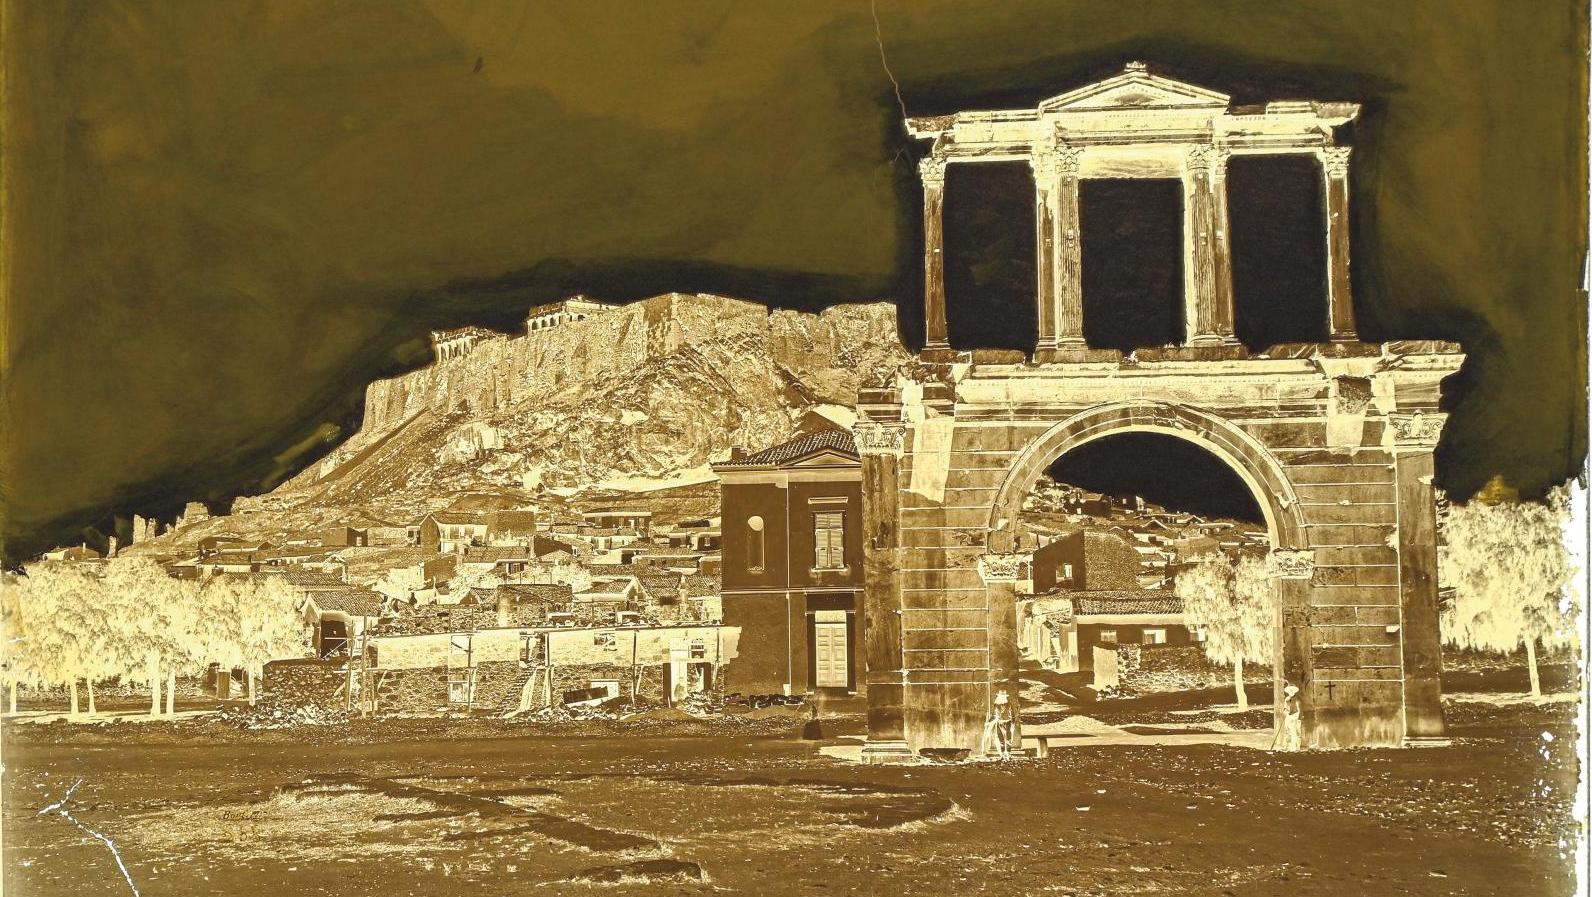 Félix Bonfils (1831-1885), Acropole et arc d'Hadrien. Athènes, 1867-1875, négatif... Félix Bonfils, photographe pionnier au Proche-Orient